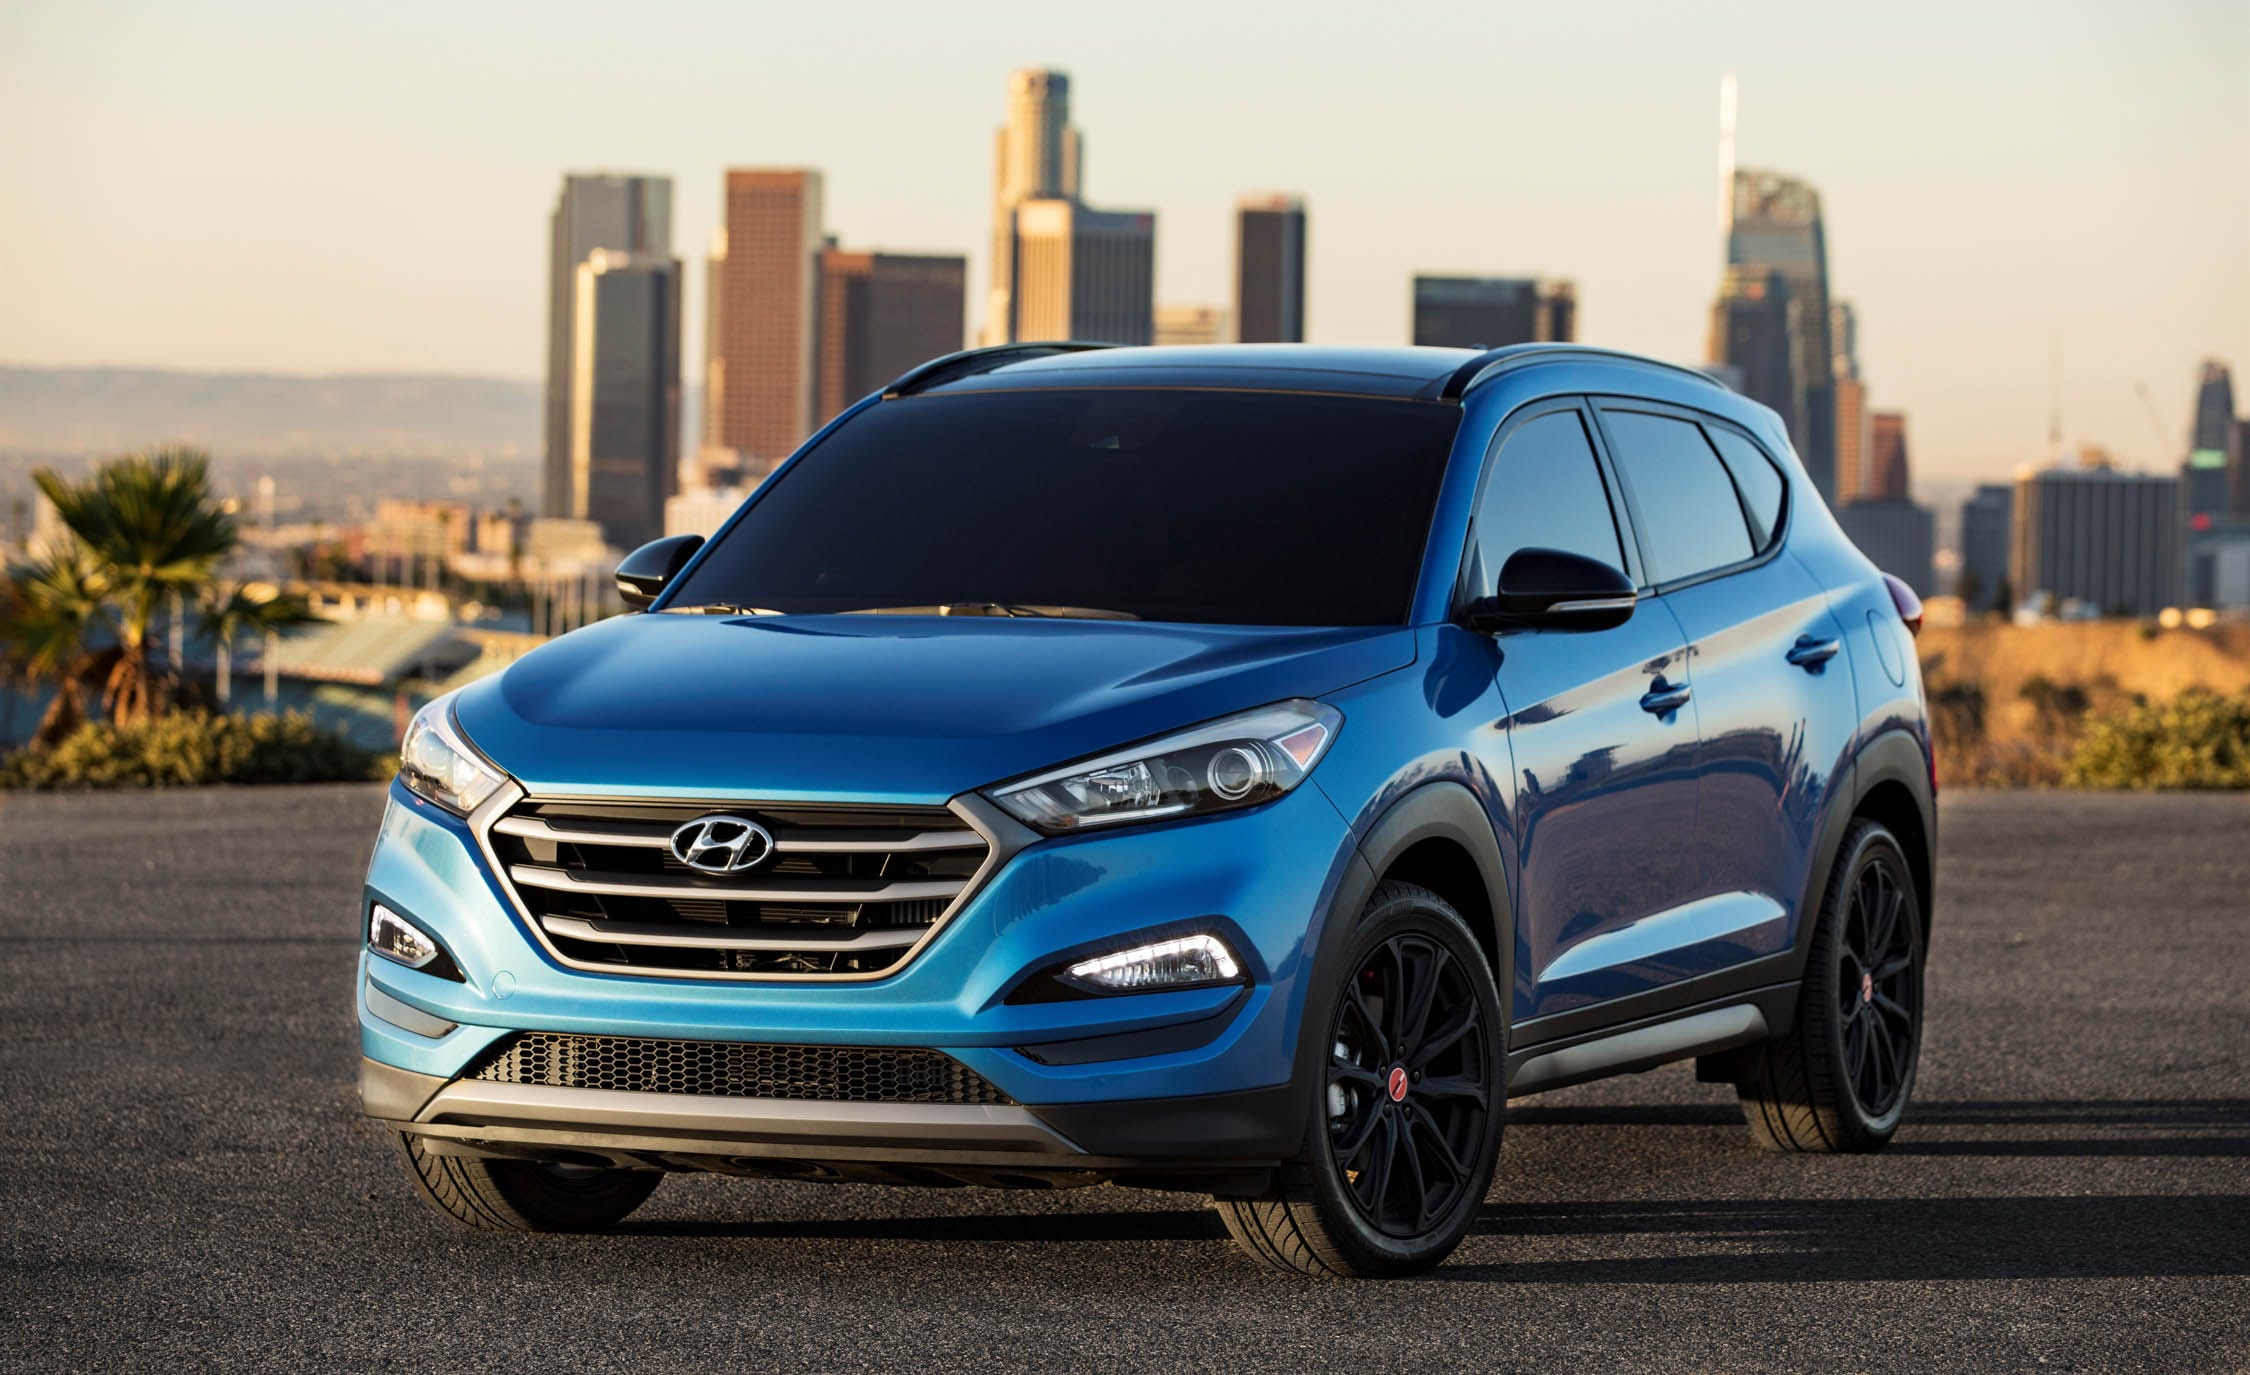 Hyundai Tucson repair prices